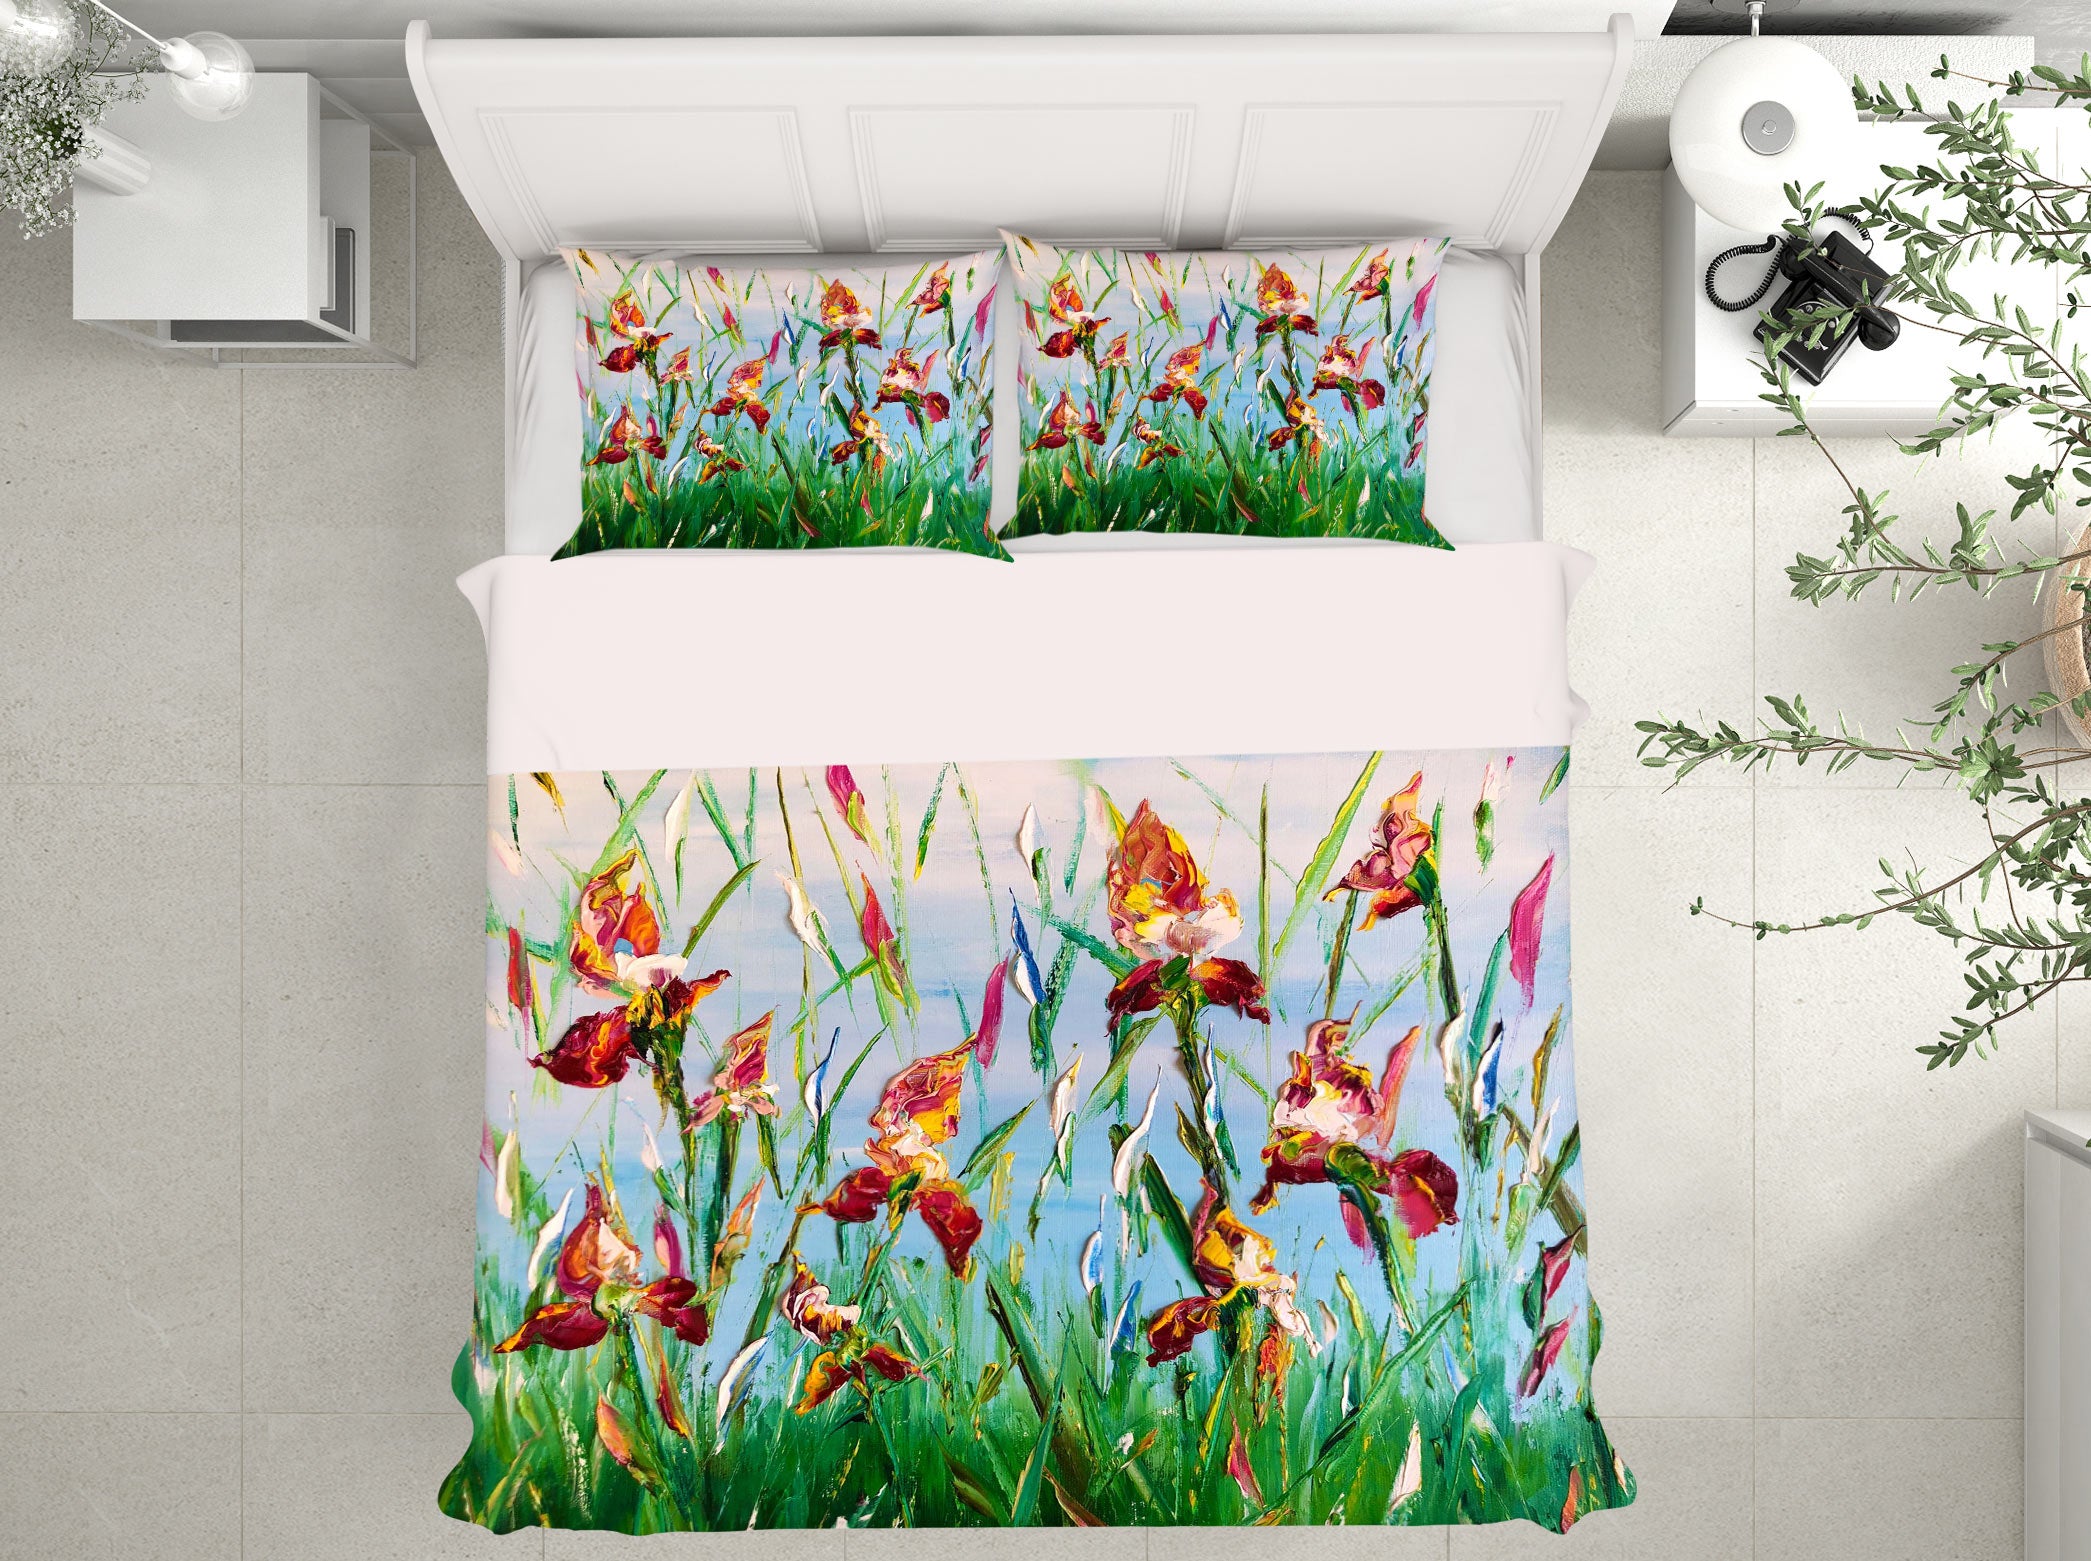 3D Green Grass 508 Skromova Marina Bedding Bed Pillowcases Quilt